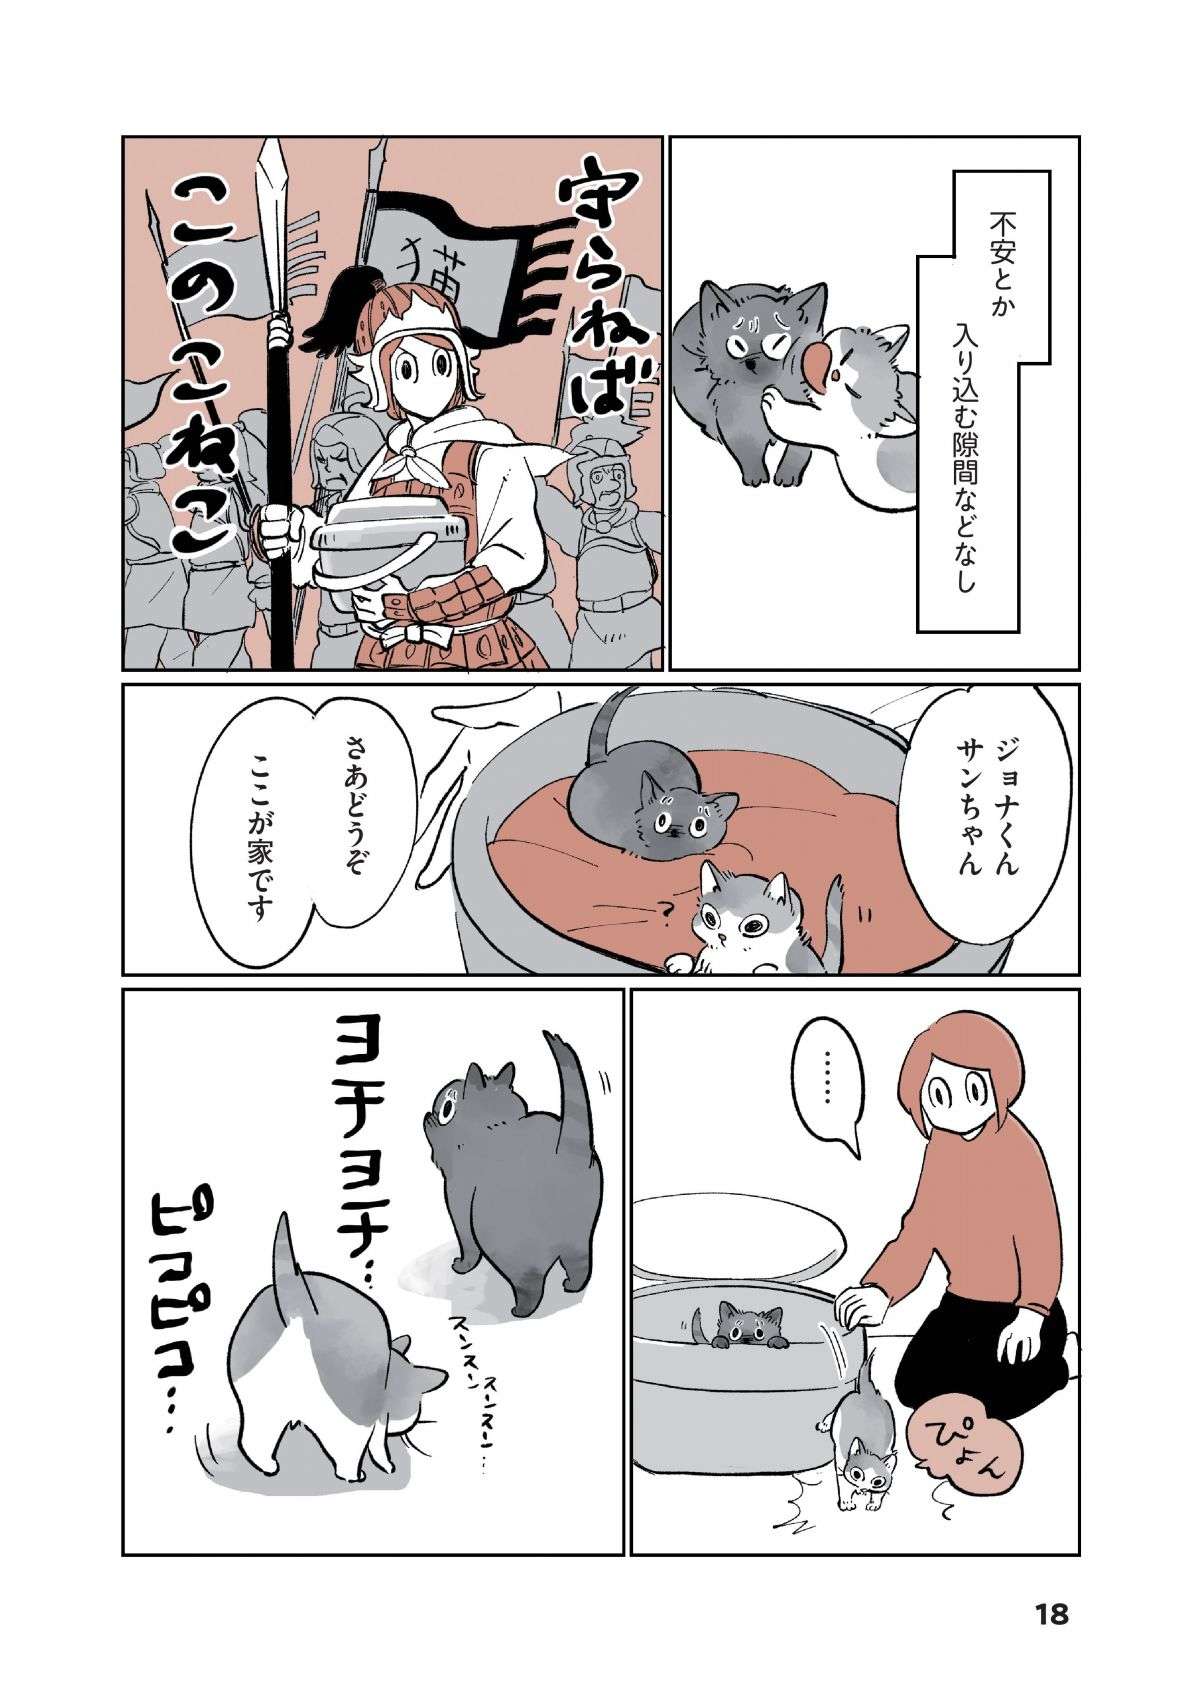 「ちまっ」ヨチヨチ歩く2匹の子猫が我が家に！  不安も吹き飛ぶ「衝撃のかわいさ」／こねこのドレイ koneko_dorei2-3.jpg